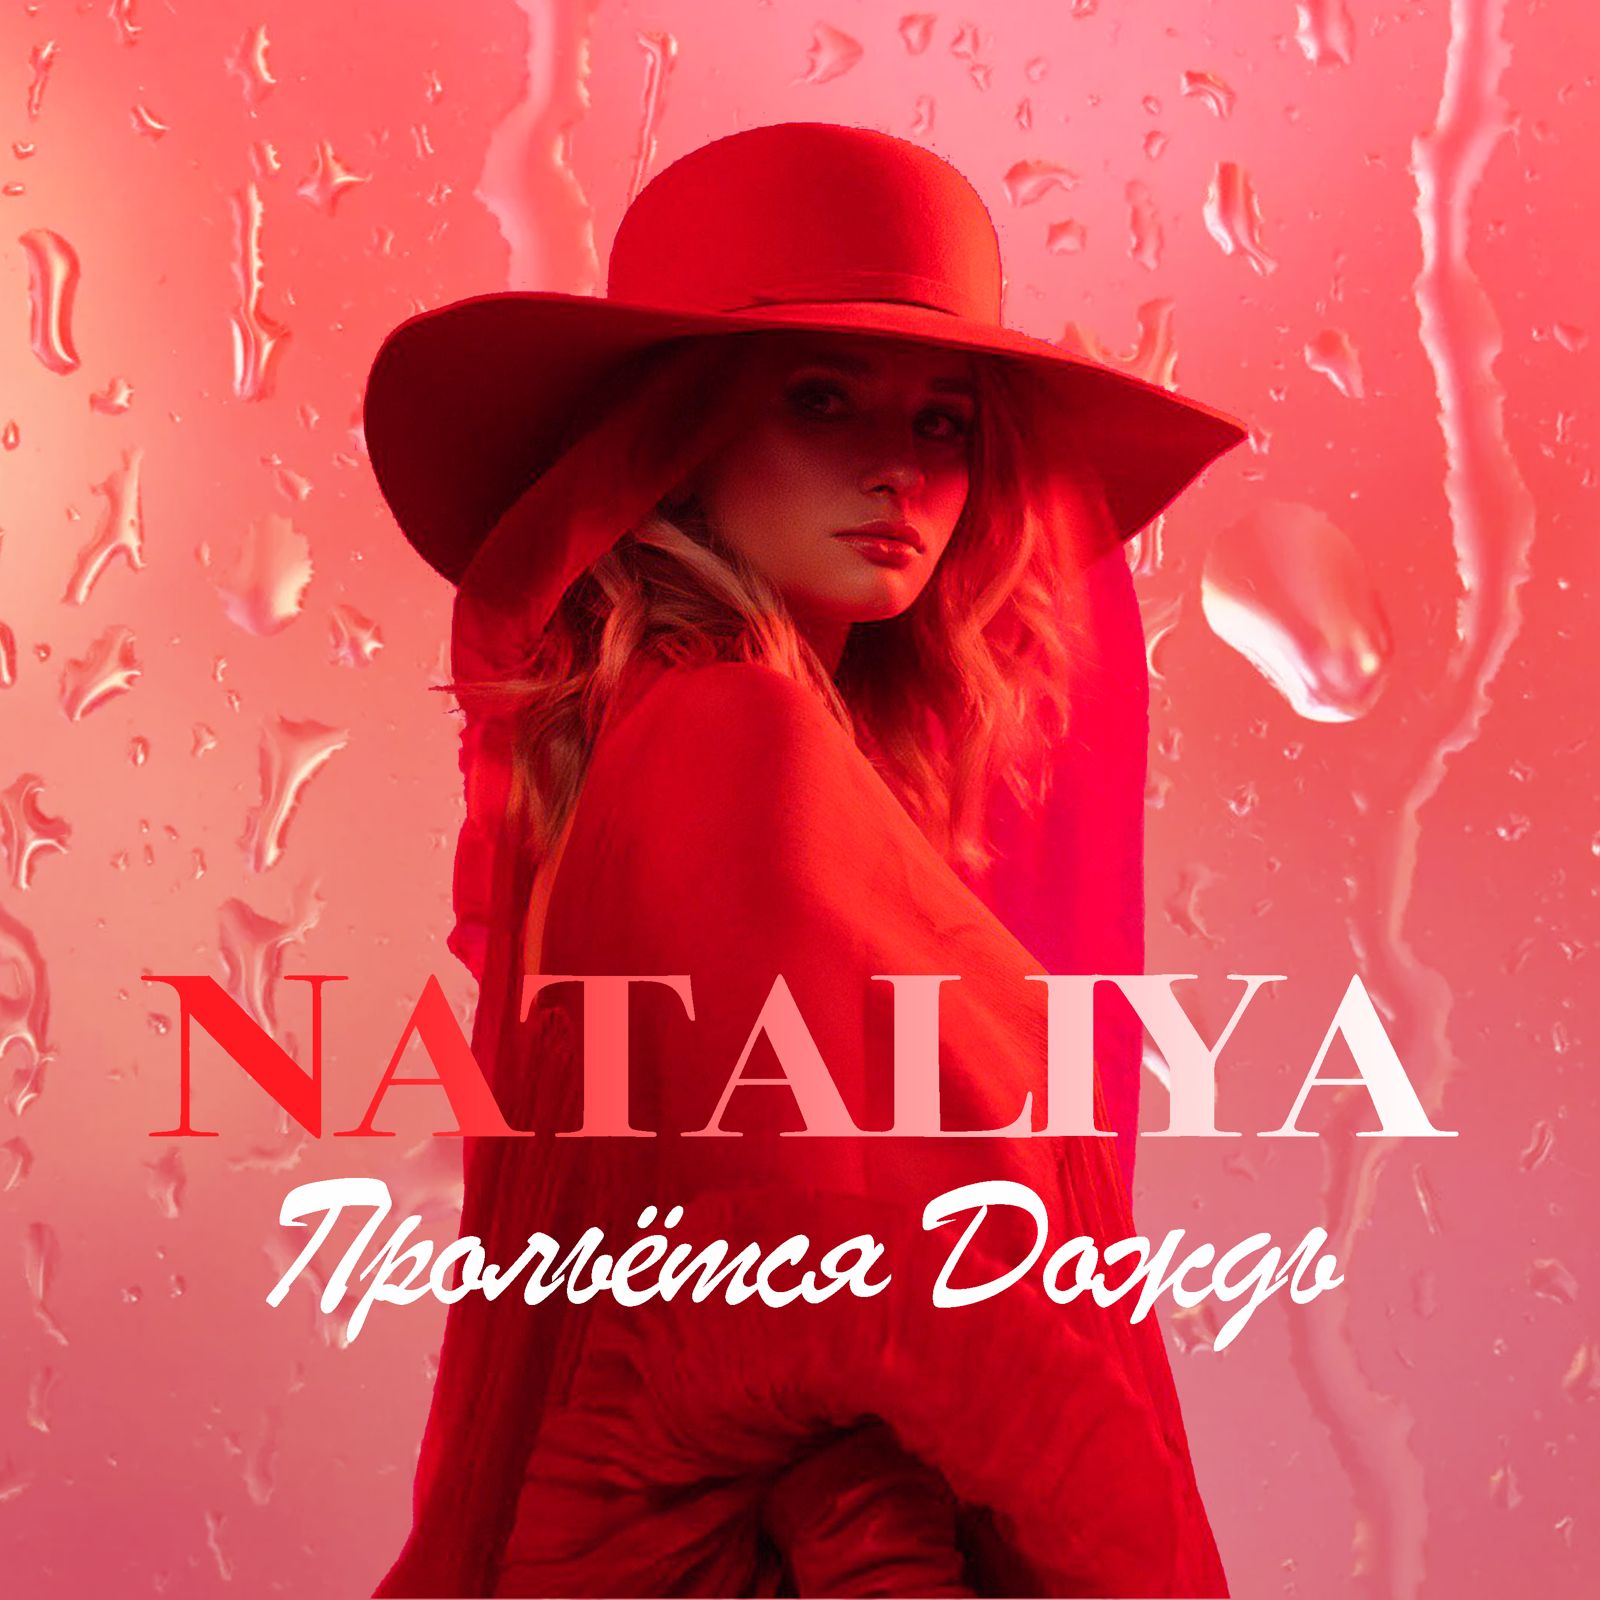 Певица NATALIYA представила новую песню «Прольётся дождь»